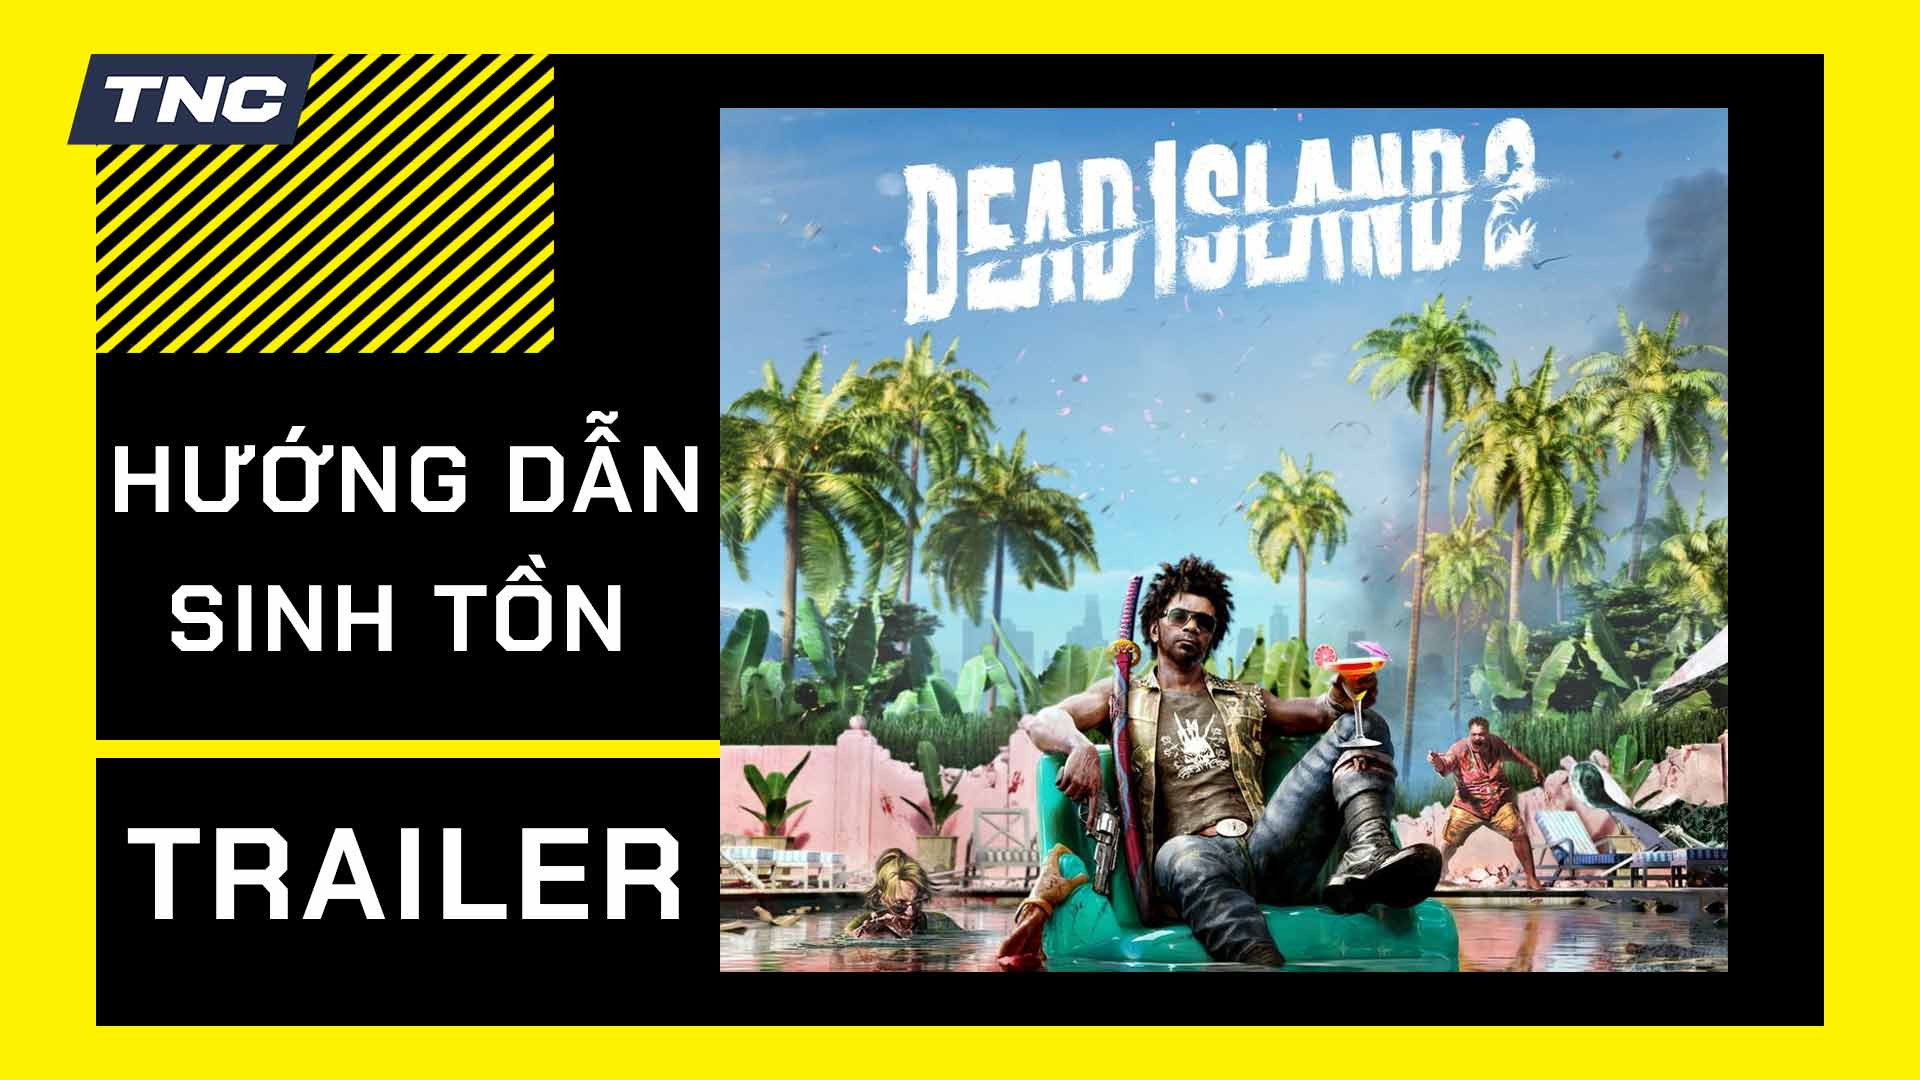 Dead Island 2 bất ngờ tung trailer hướng dẫn sinh tồn trong địa ngục zombie trước ngày ra mắt